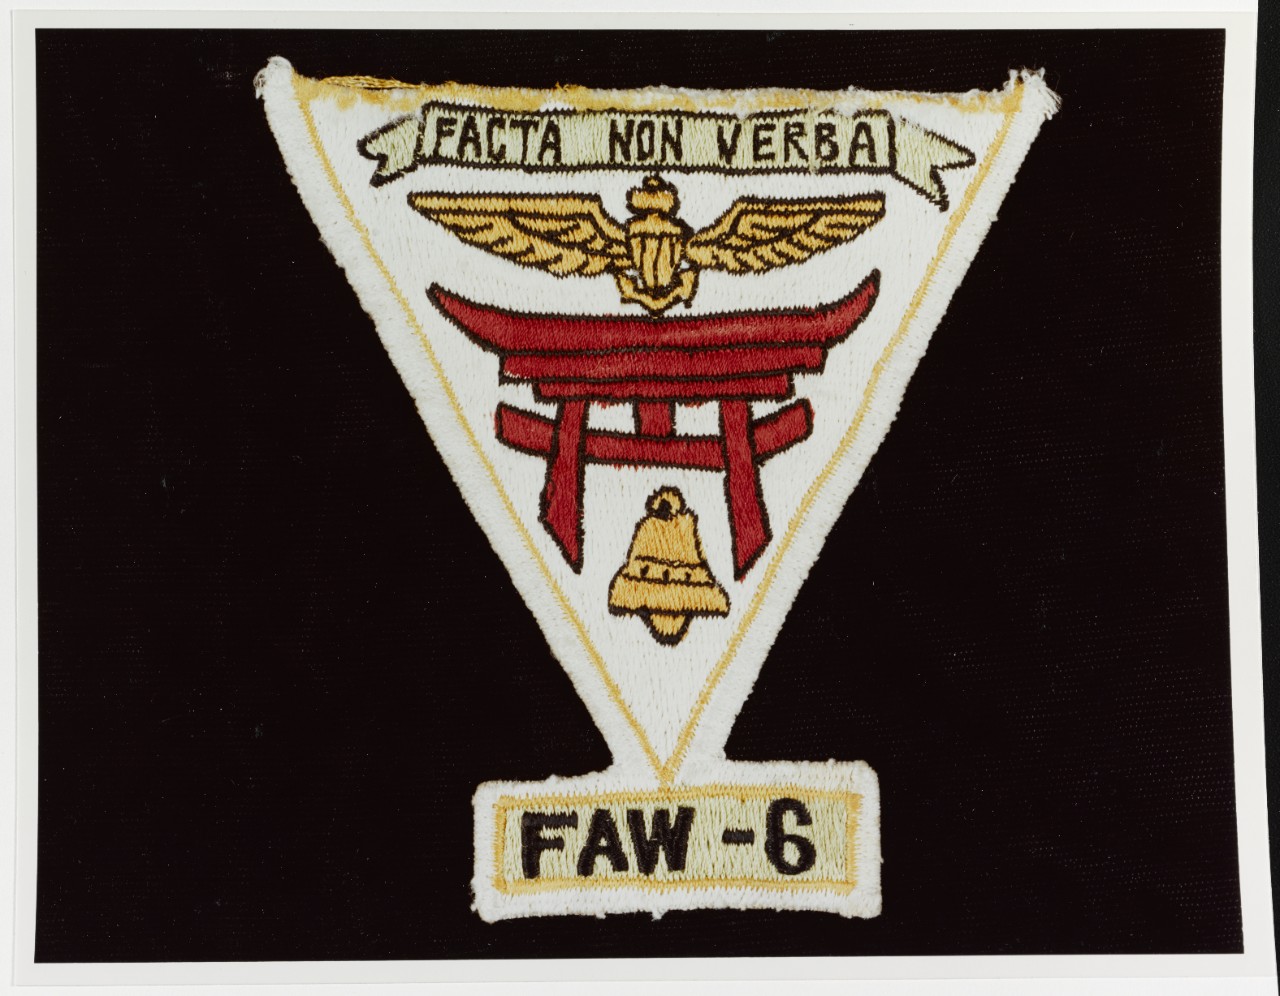 Insignia: Fleet Air Wing Six